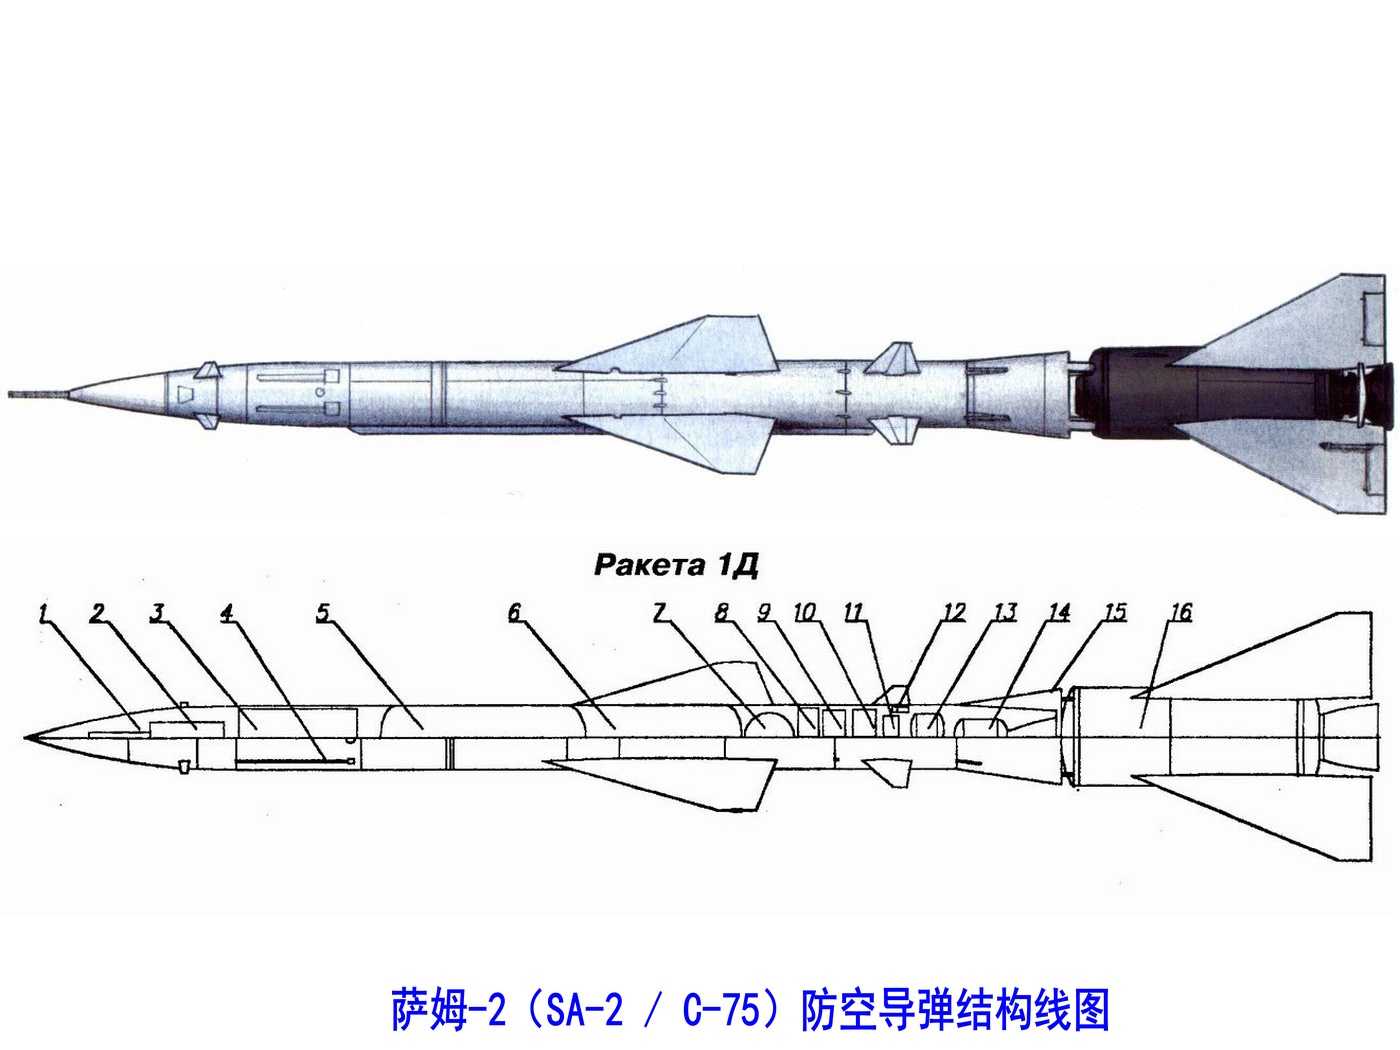 薩姆-2防空飛彈結構線圖